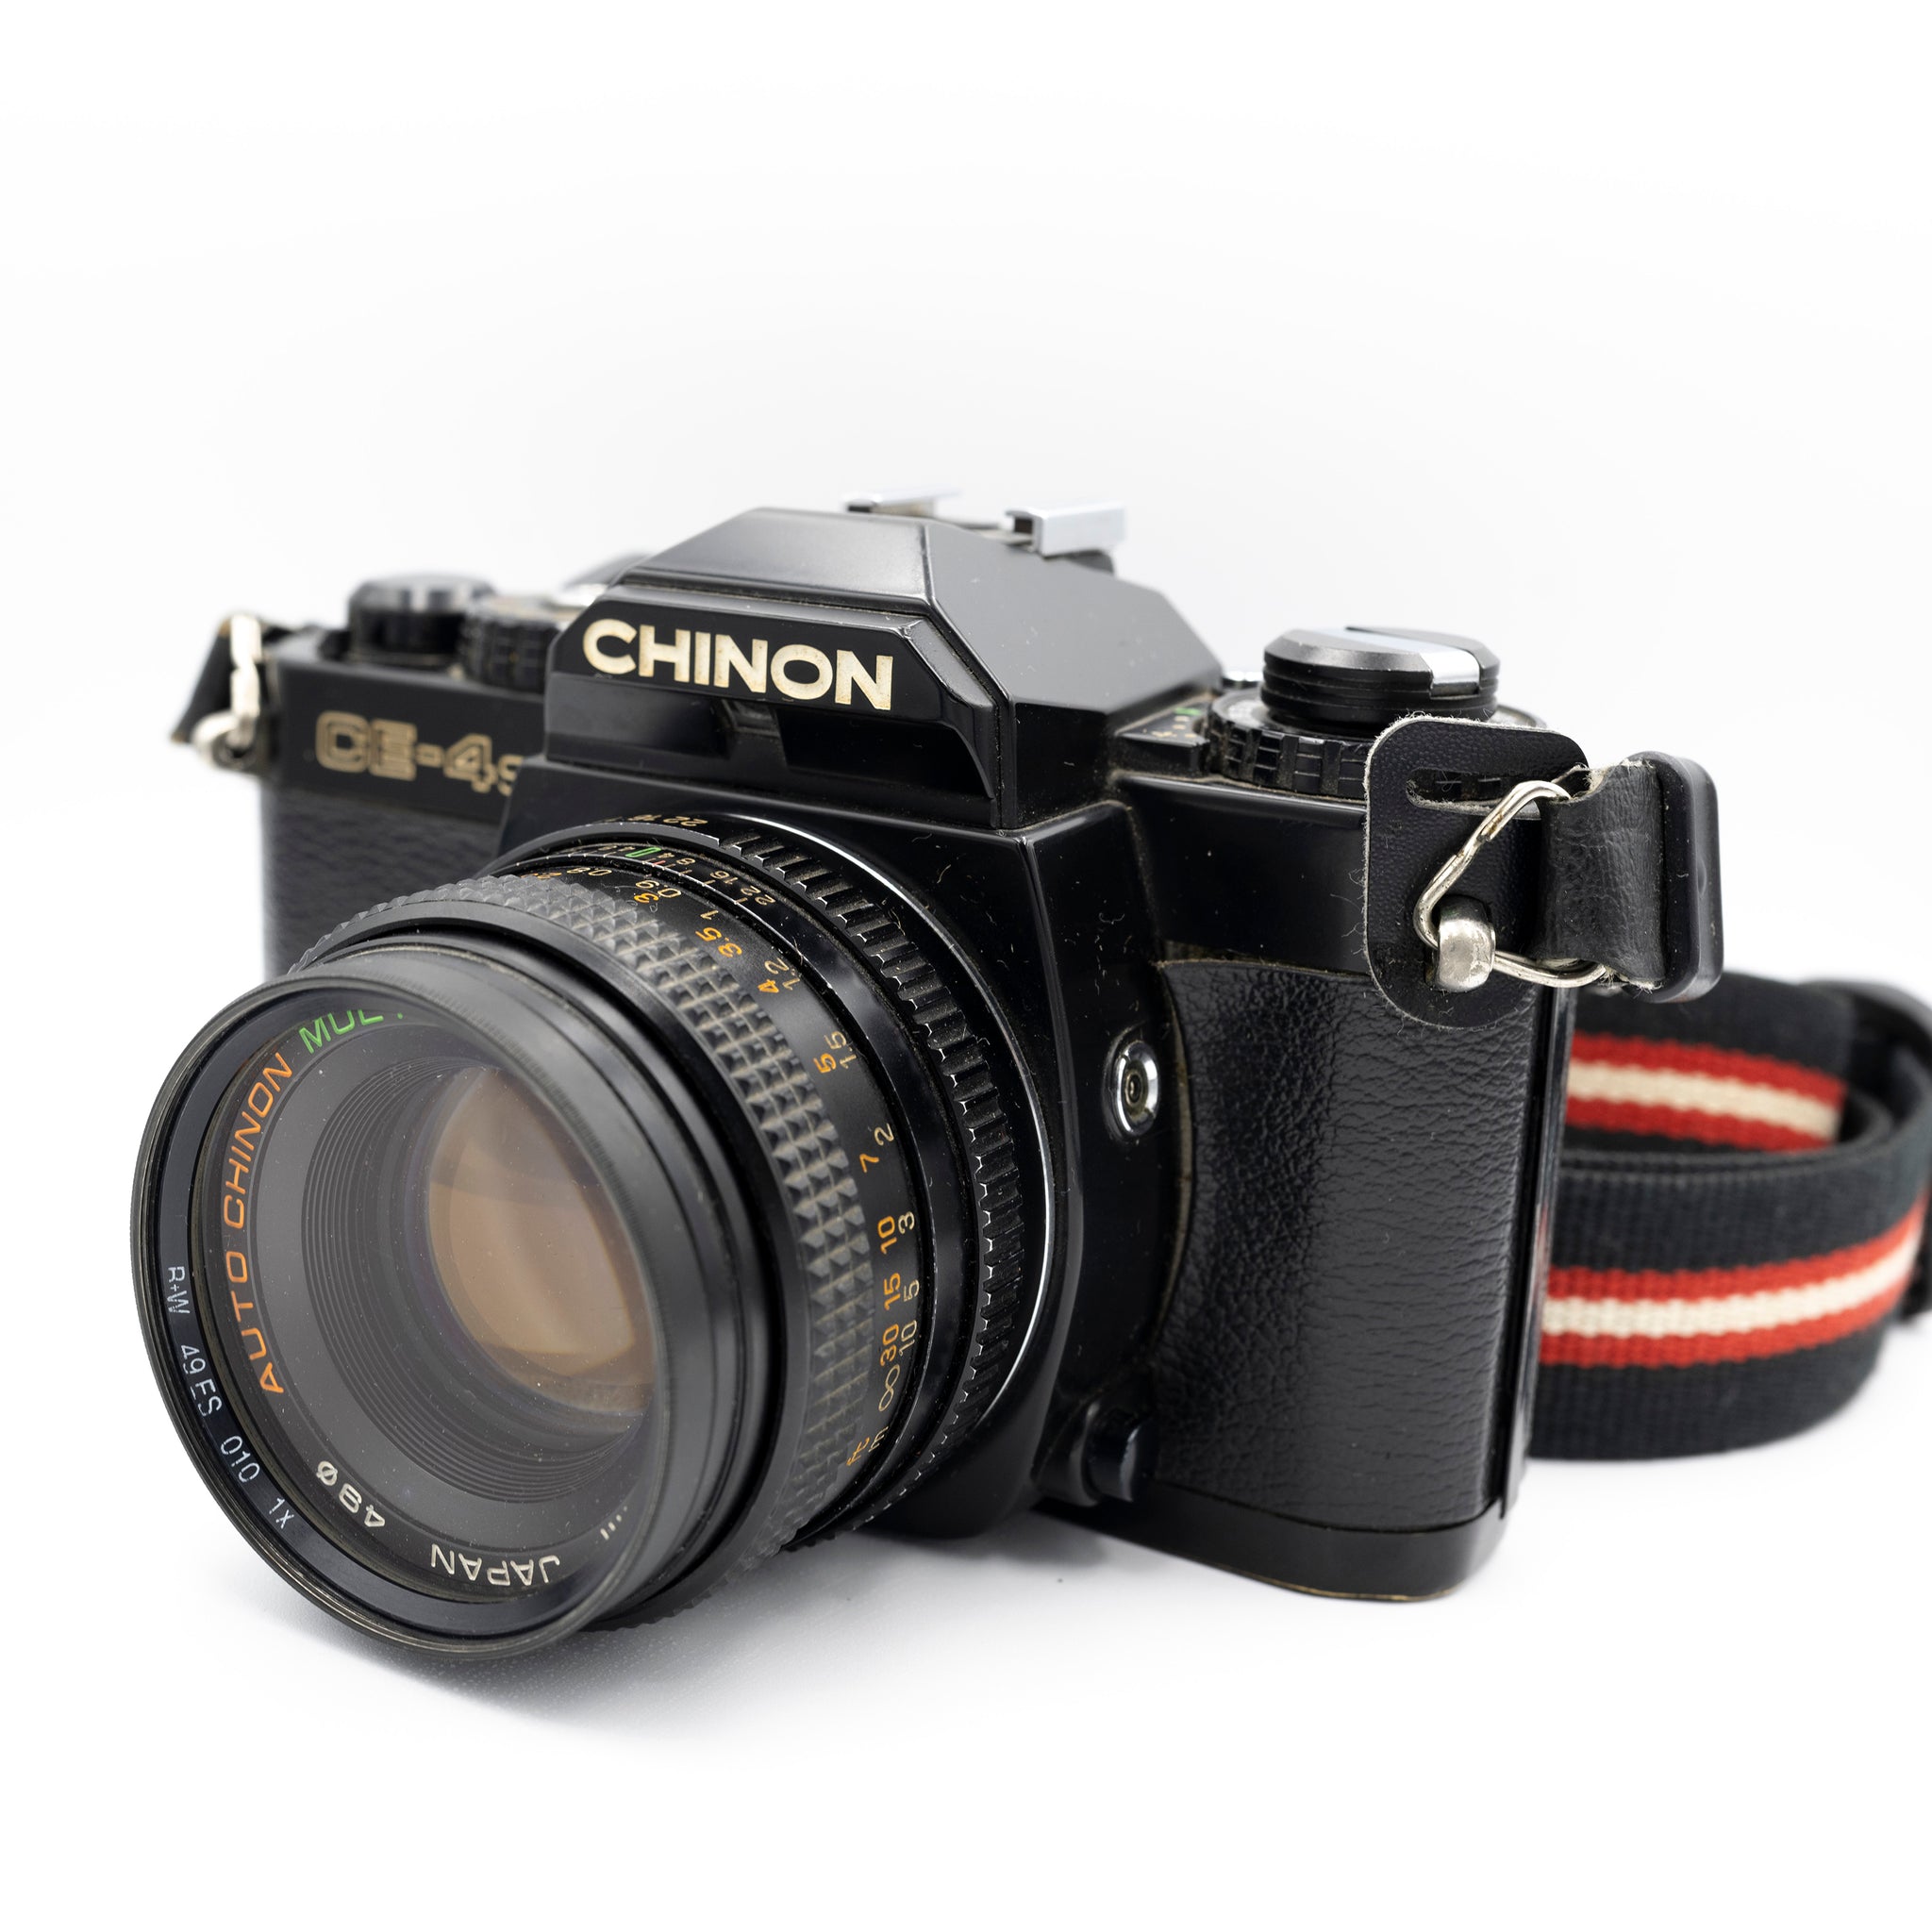 Chinon CE-4S